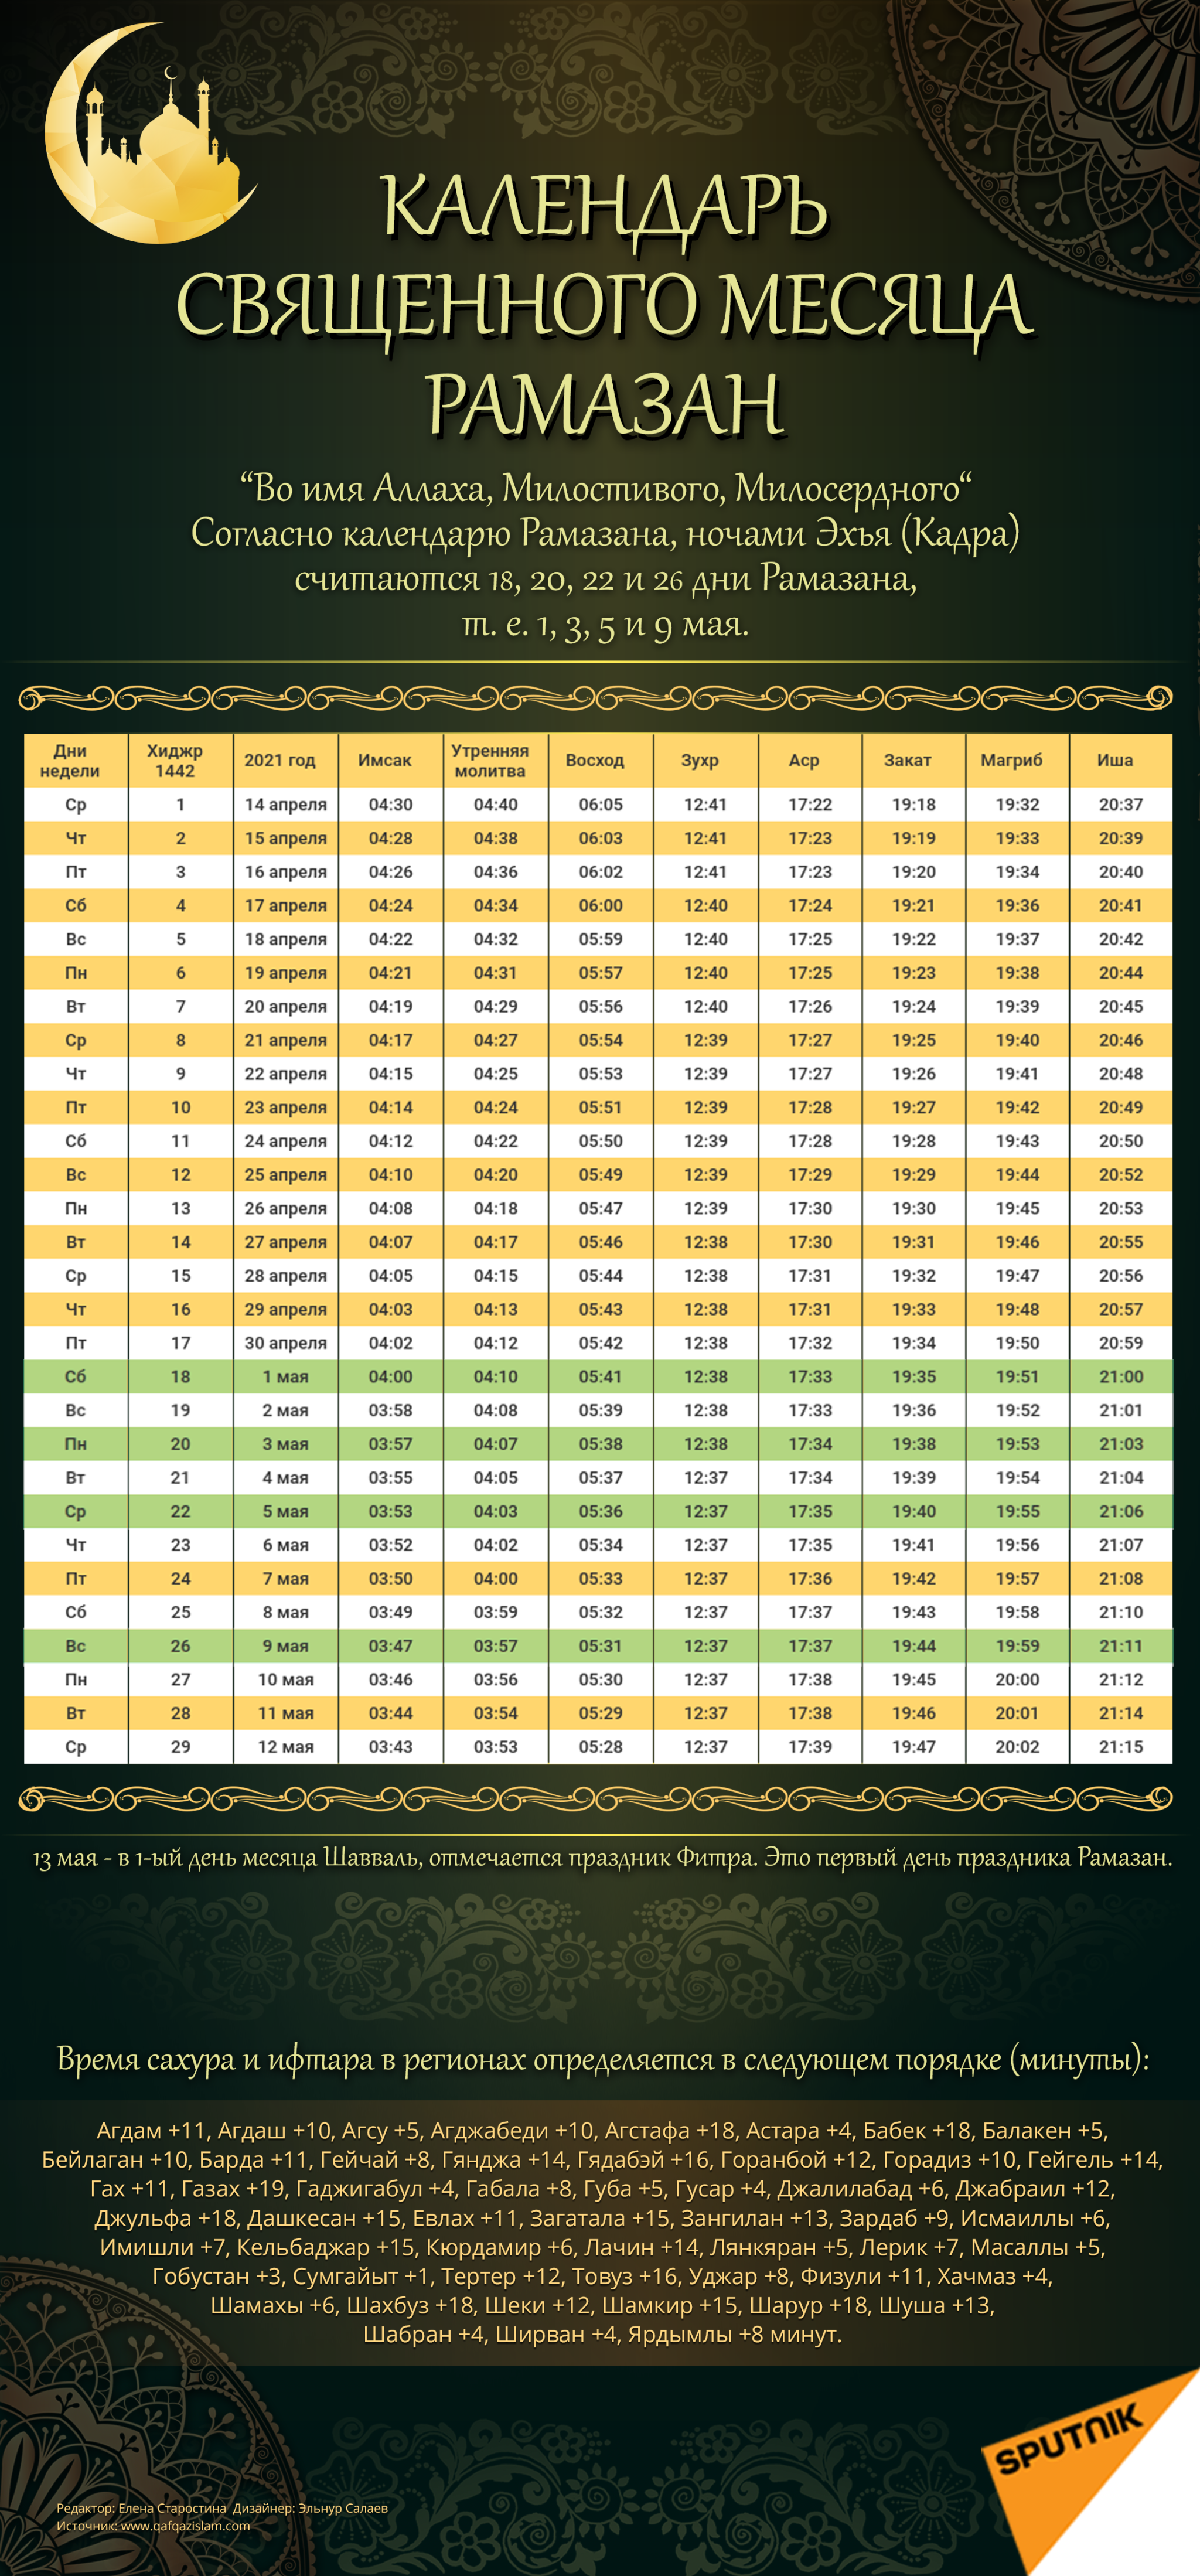 Календарь для постящихся в священный месяц Рамазан